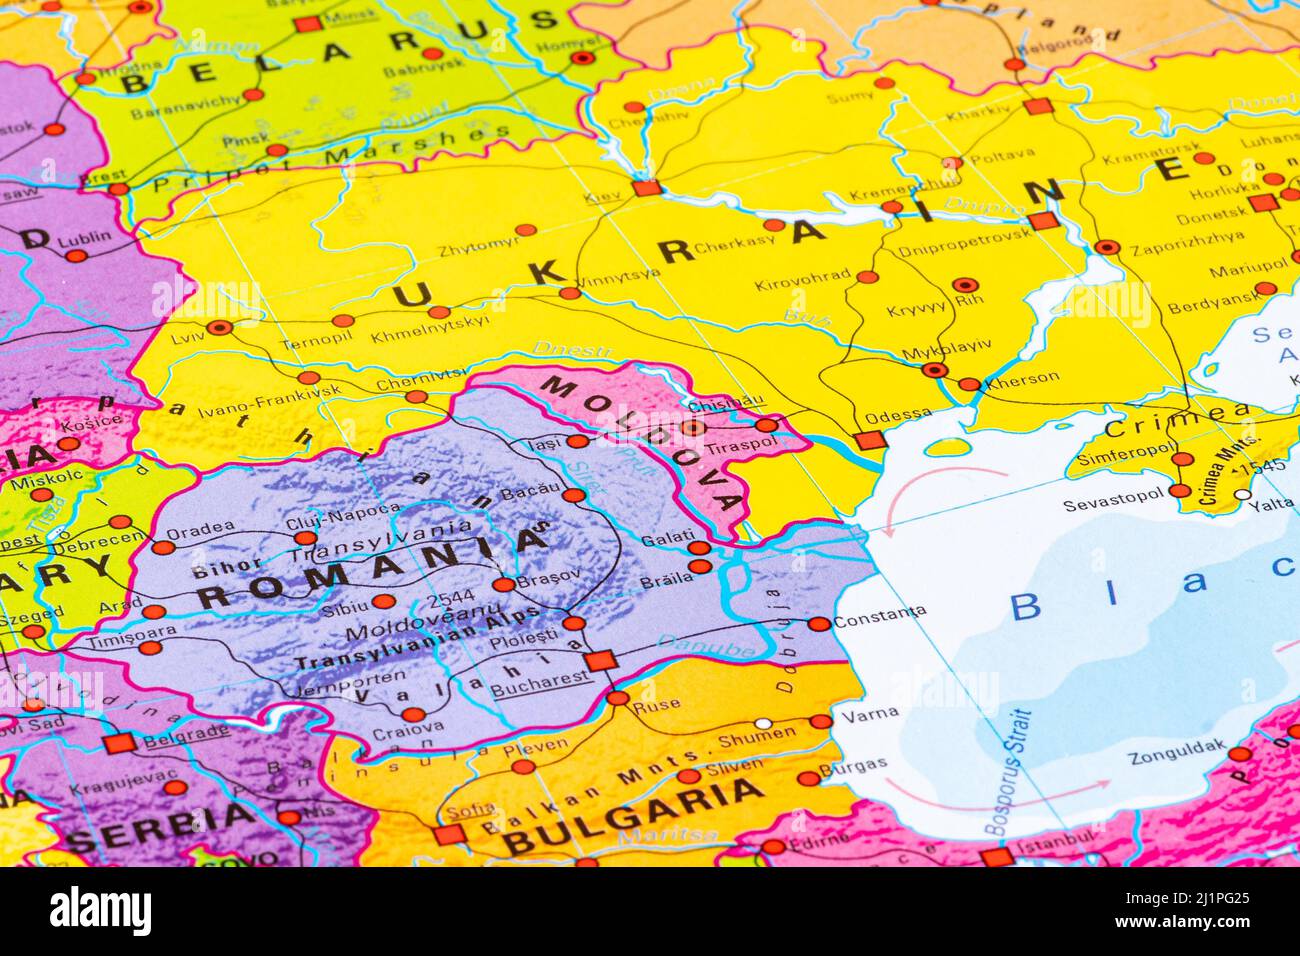 Carte de la Moldavie, de l'Europe, de l'Union européenne, avec frontières nationales, capitales, Rivières et mers, capitale Chisinau, gros plan Banque D'Images